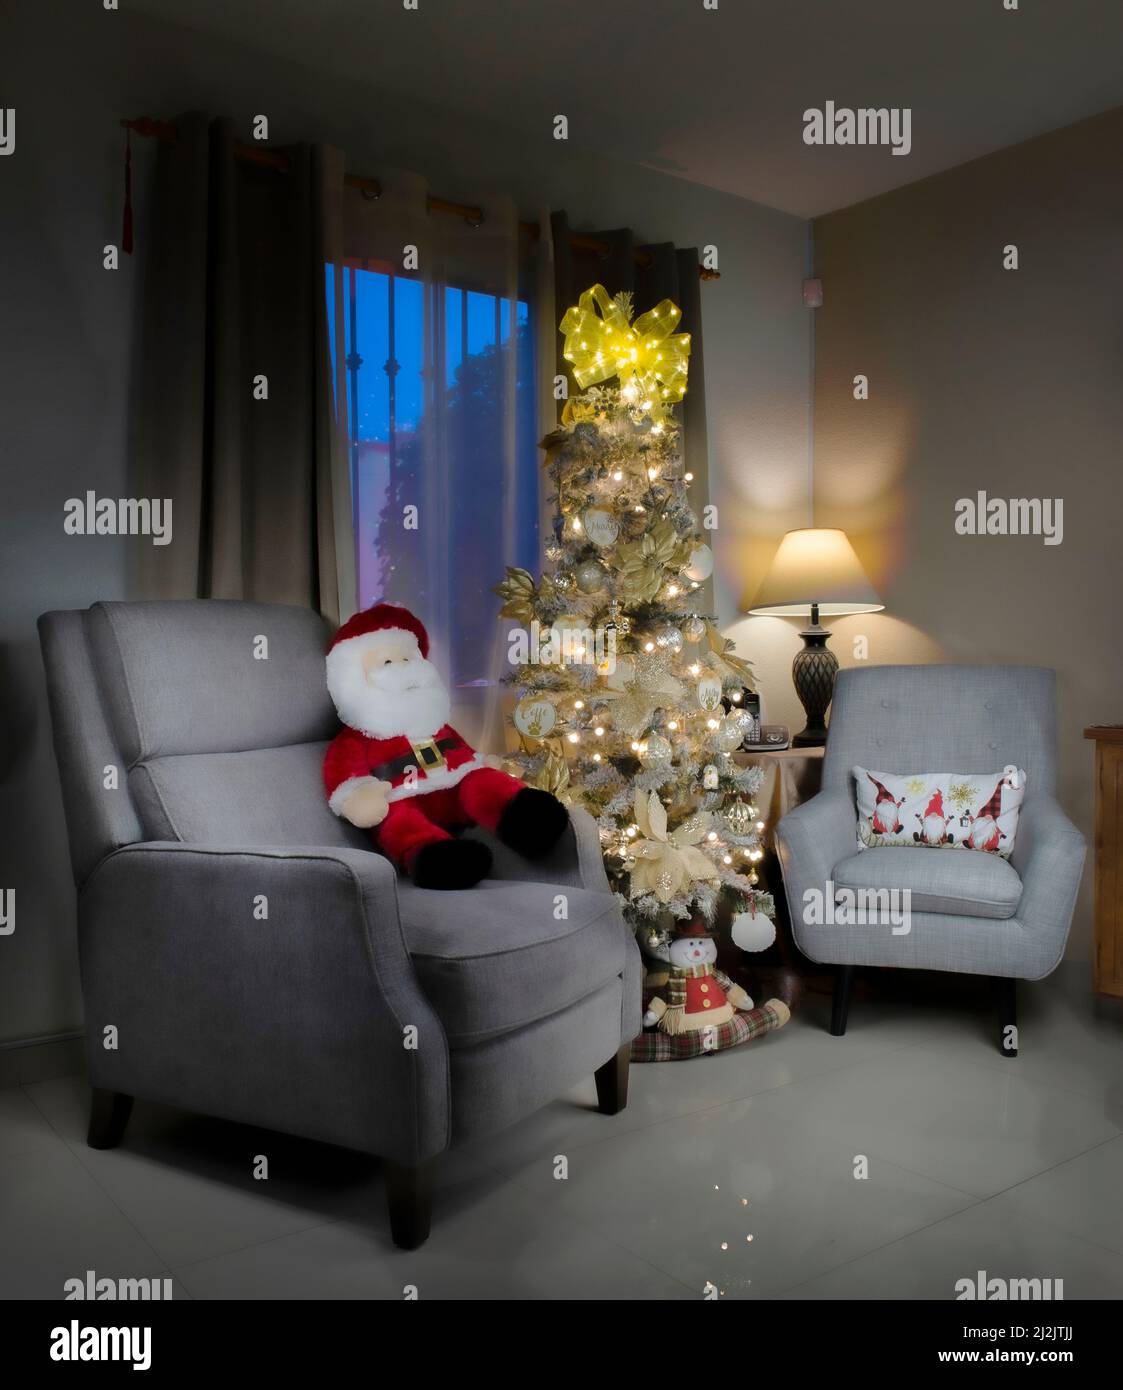 Weihnachtsdekoration in einem Wohnzimmer mit Fensterblick und einem weihnachtsbaum und einem warmen Licht von einer Lampe in der Ecke und einem weihnachtsmann Stockfoto